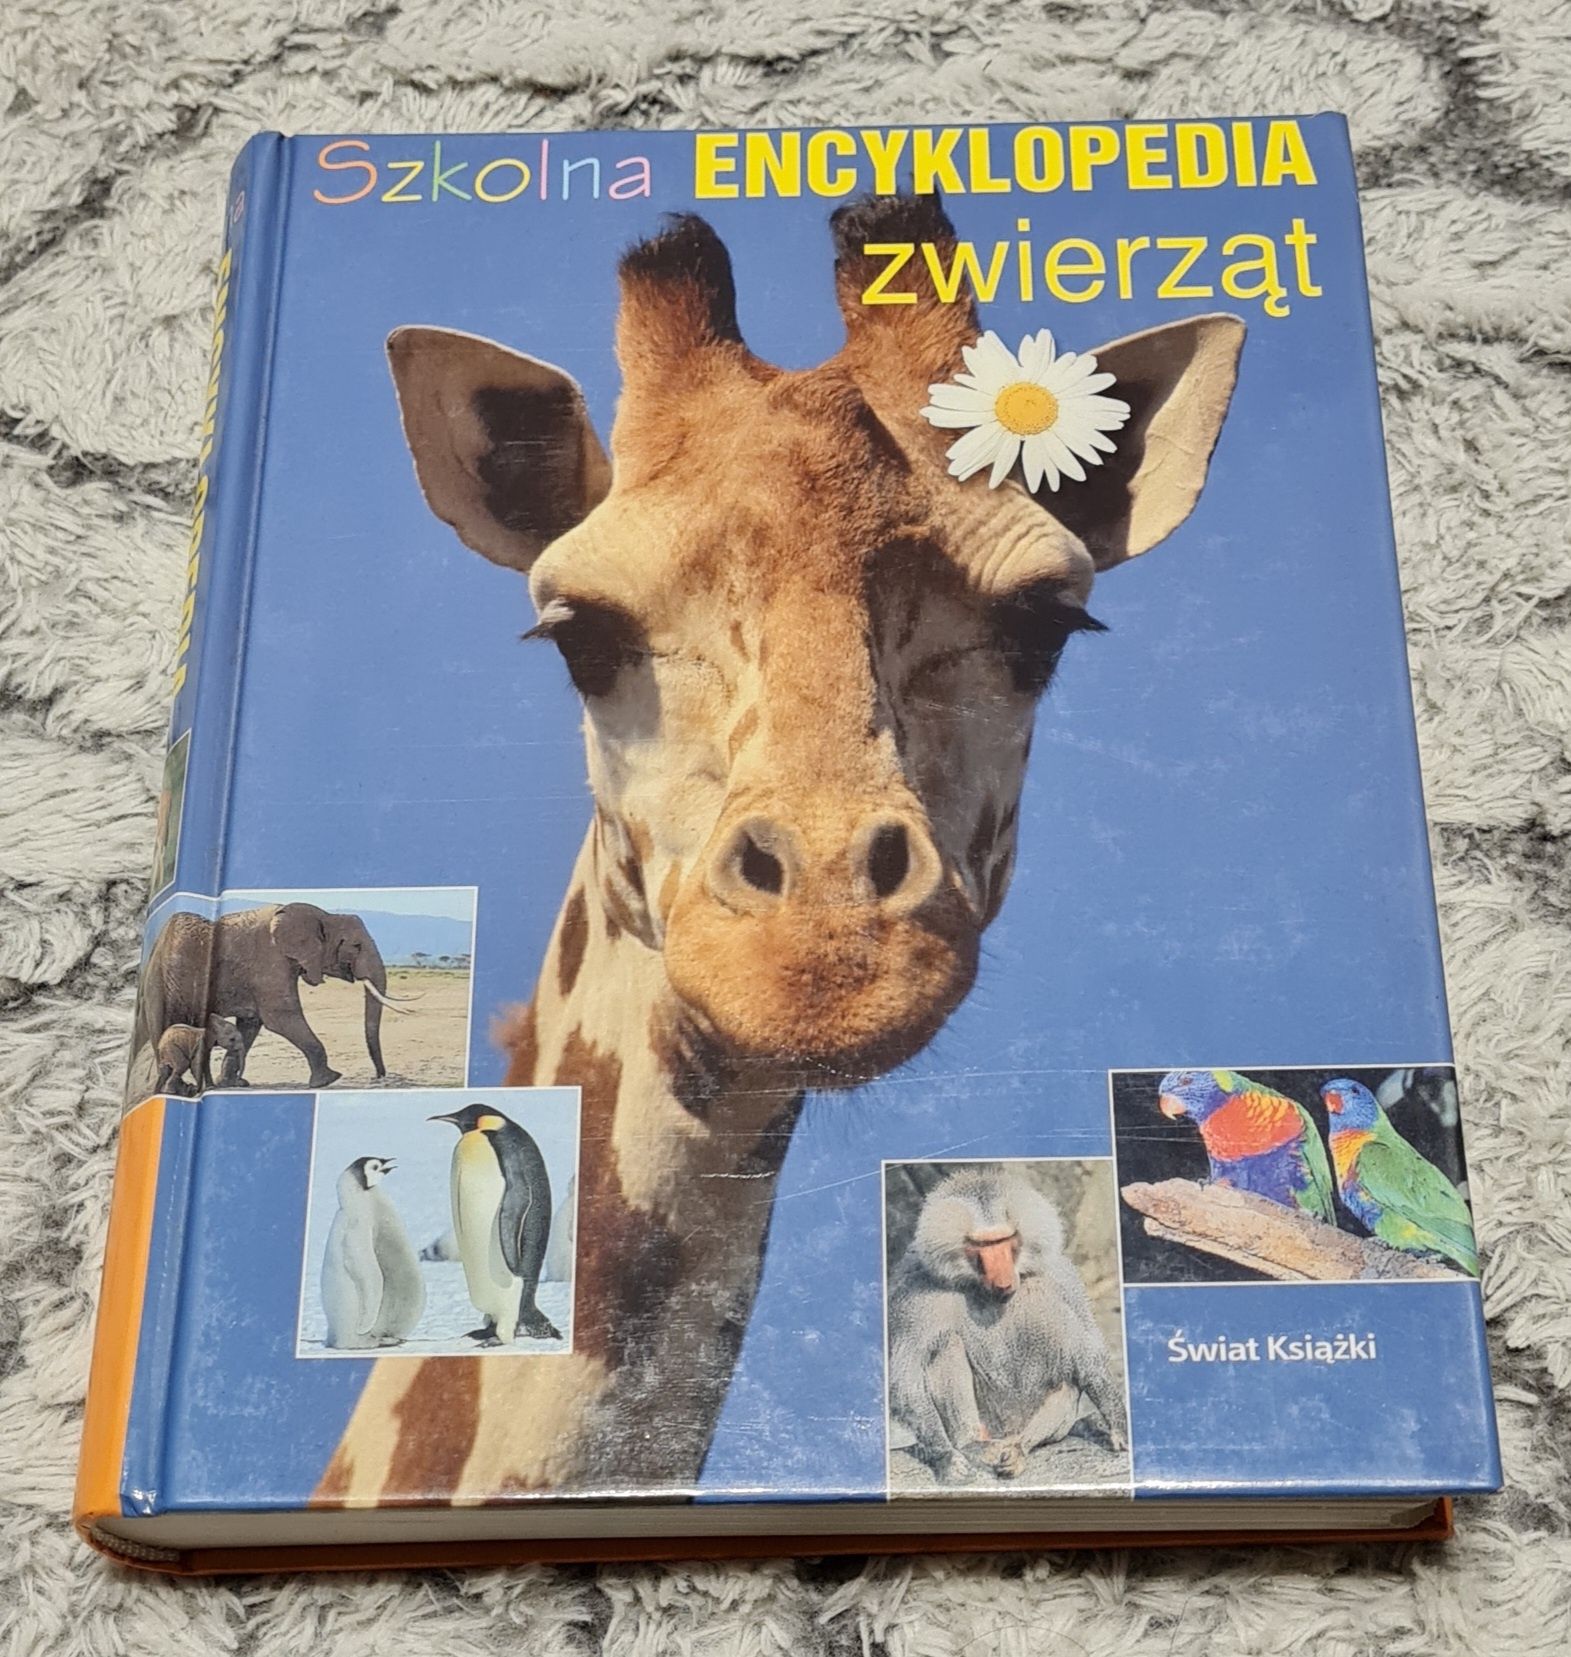 Szkolna Encyklopedia ZWIERZĄT -świat książki